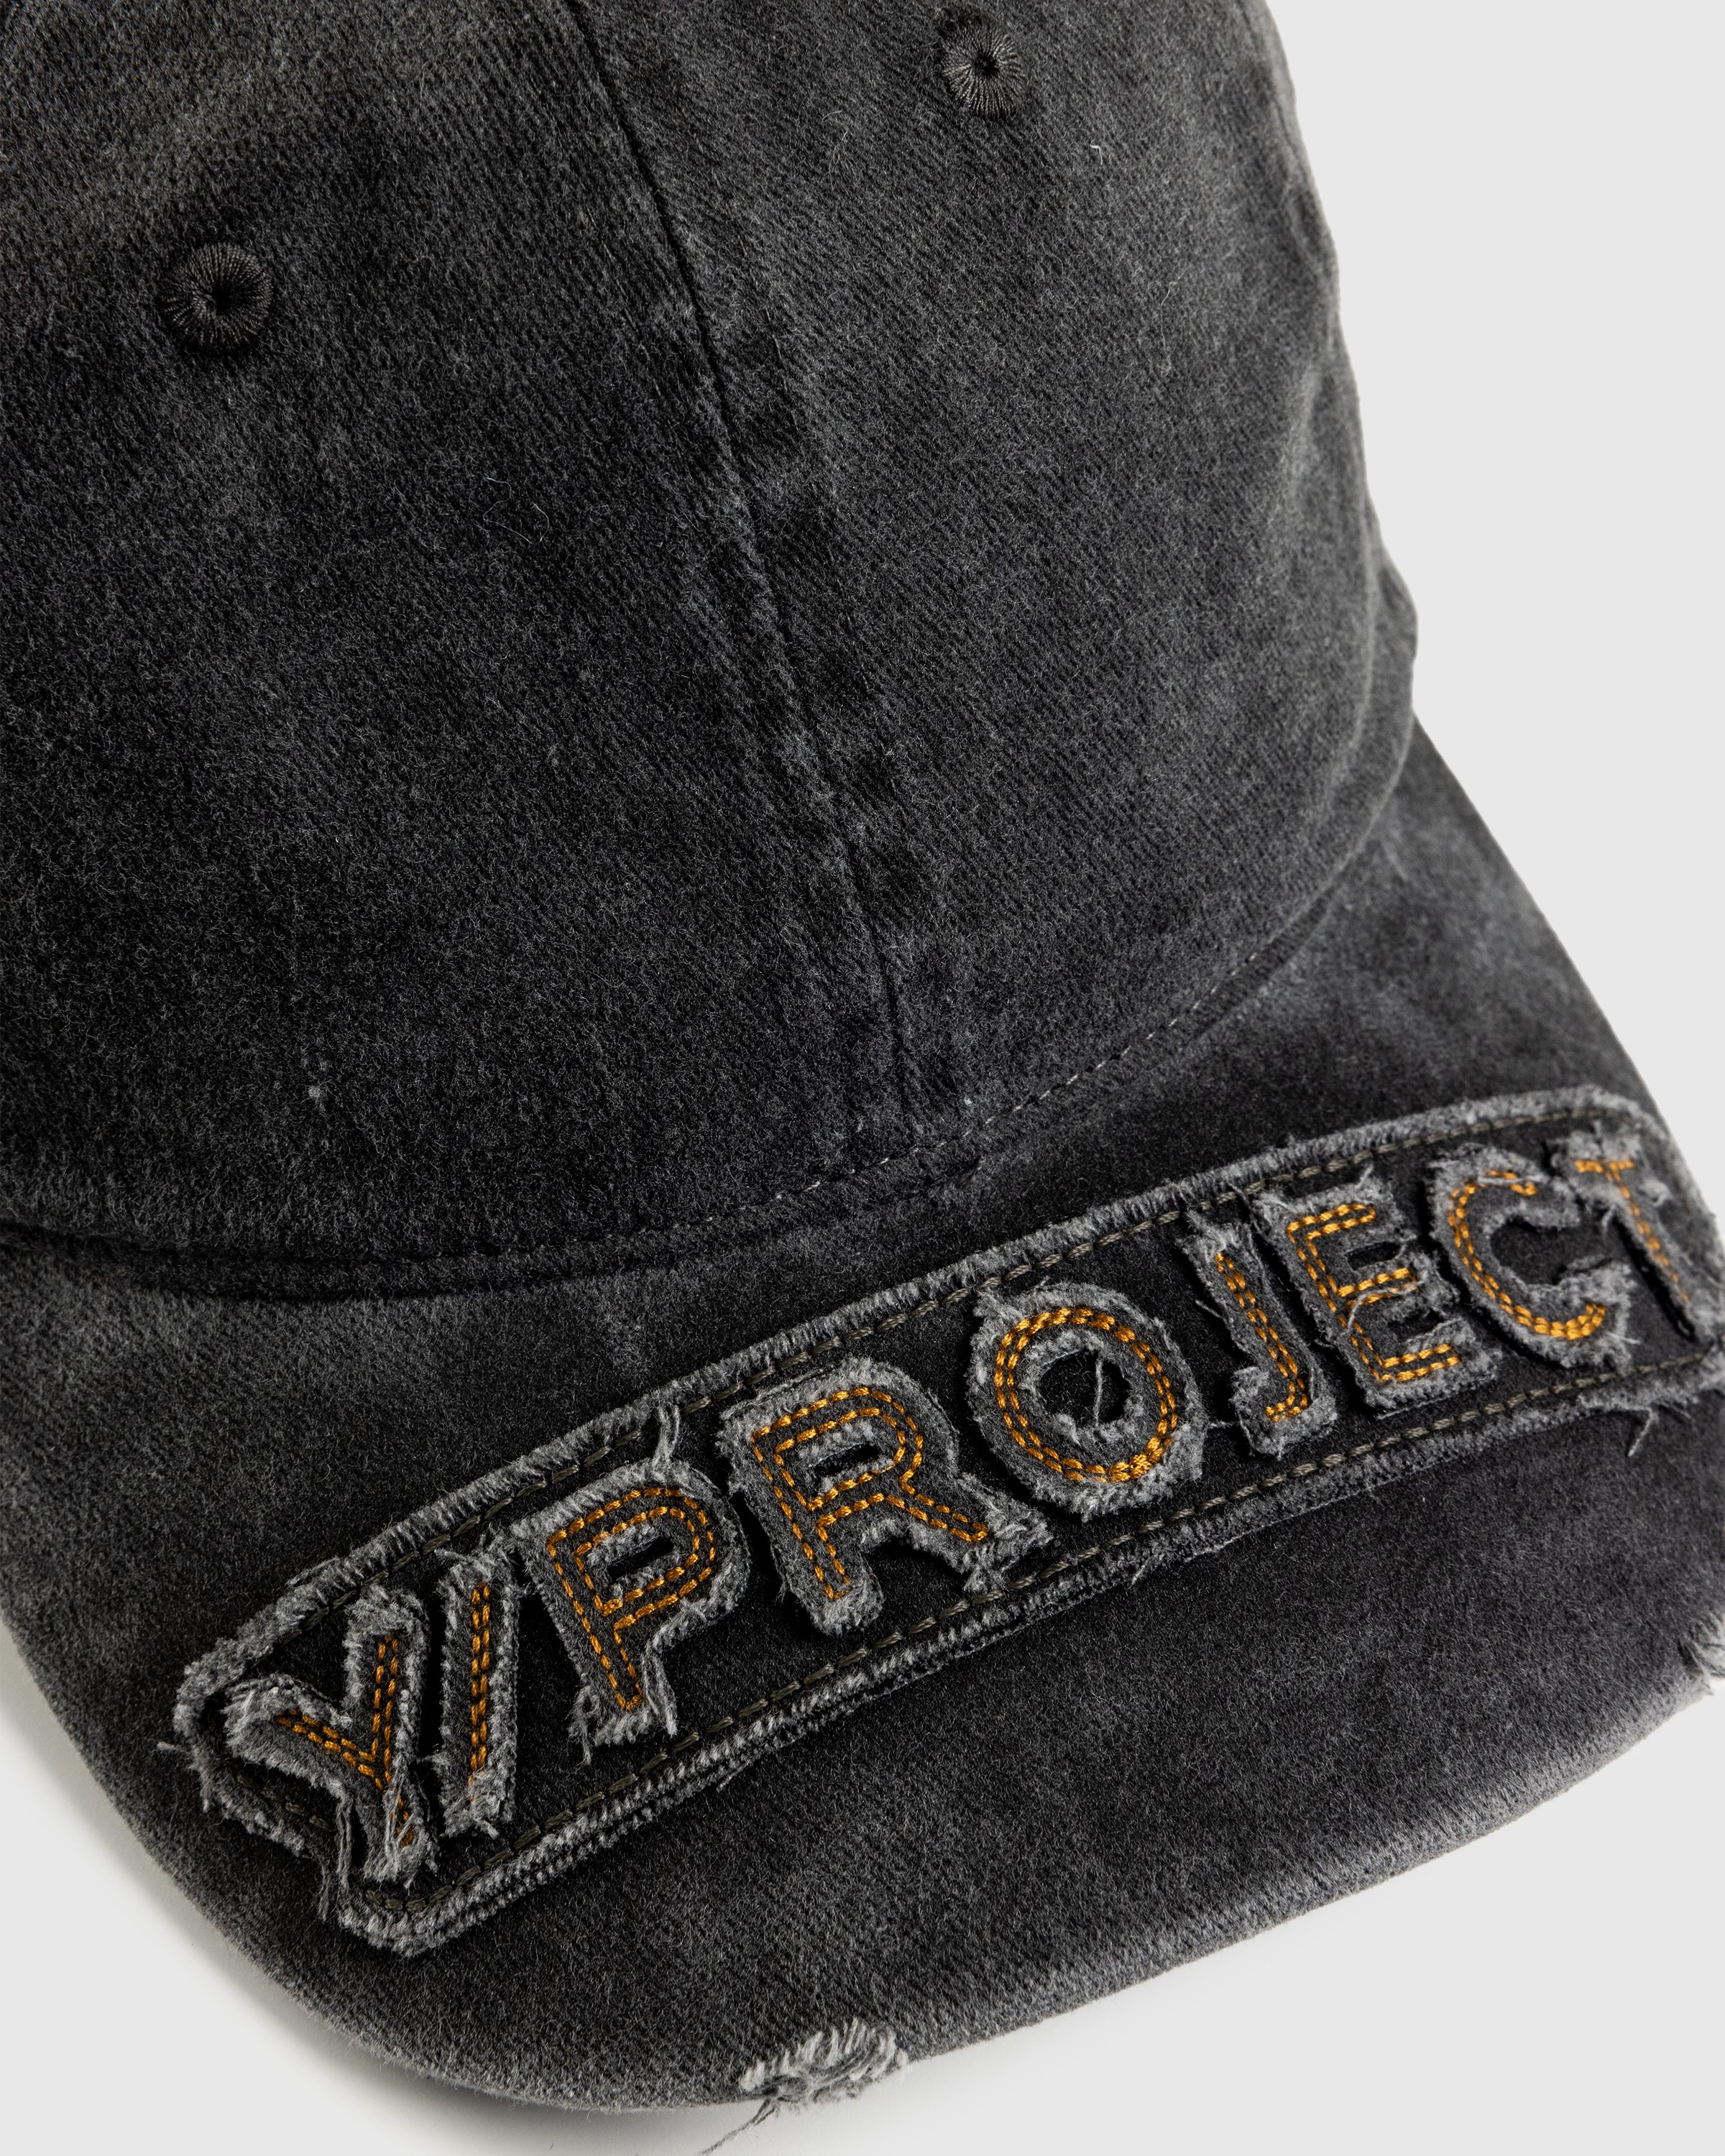 Y/Project - Y/Project Baseball Cap Vintage Black - Accessories - Black - Image 5